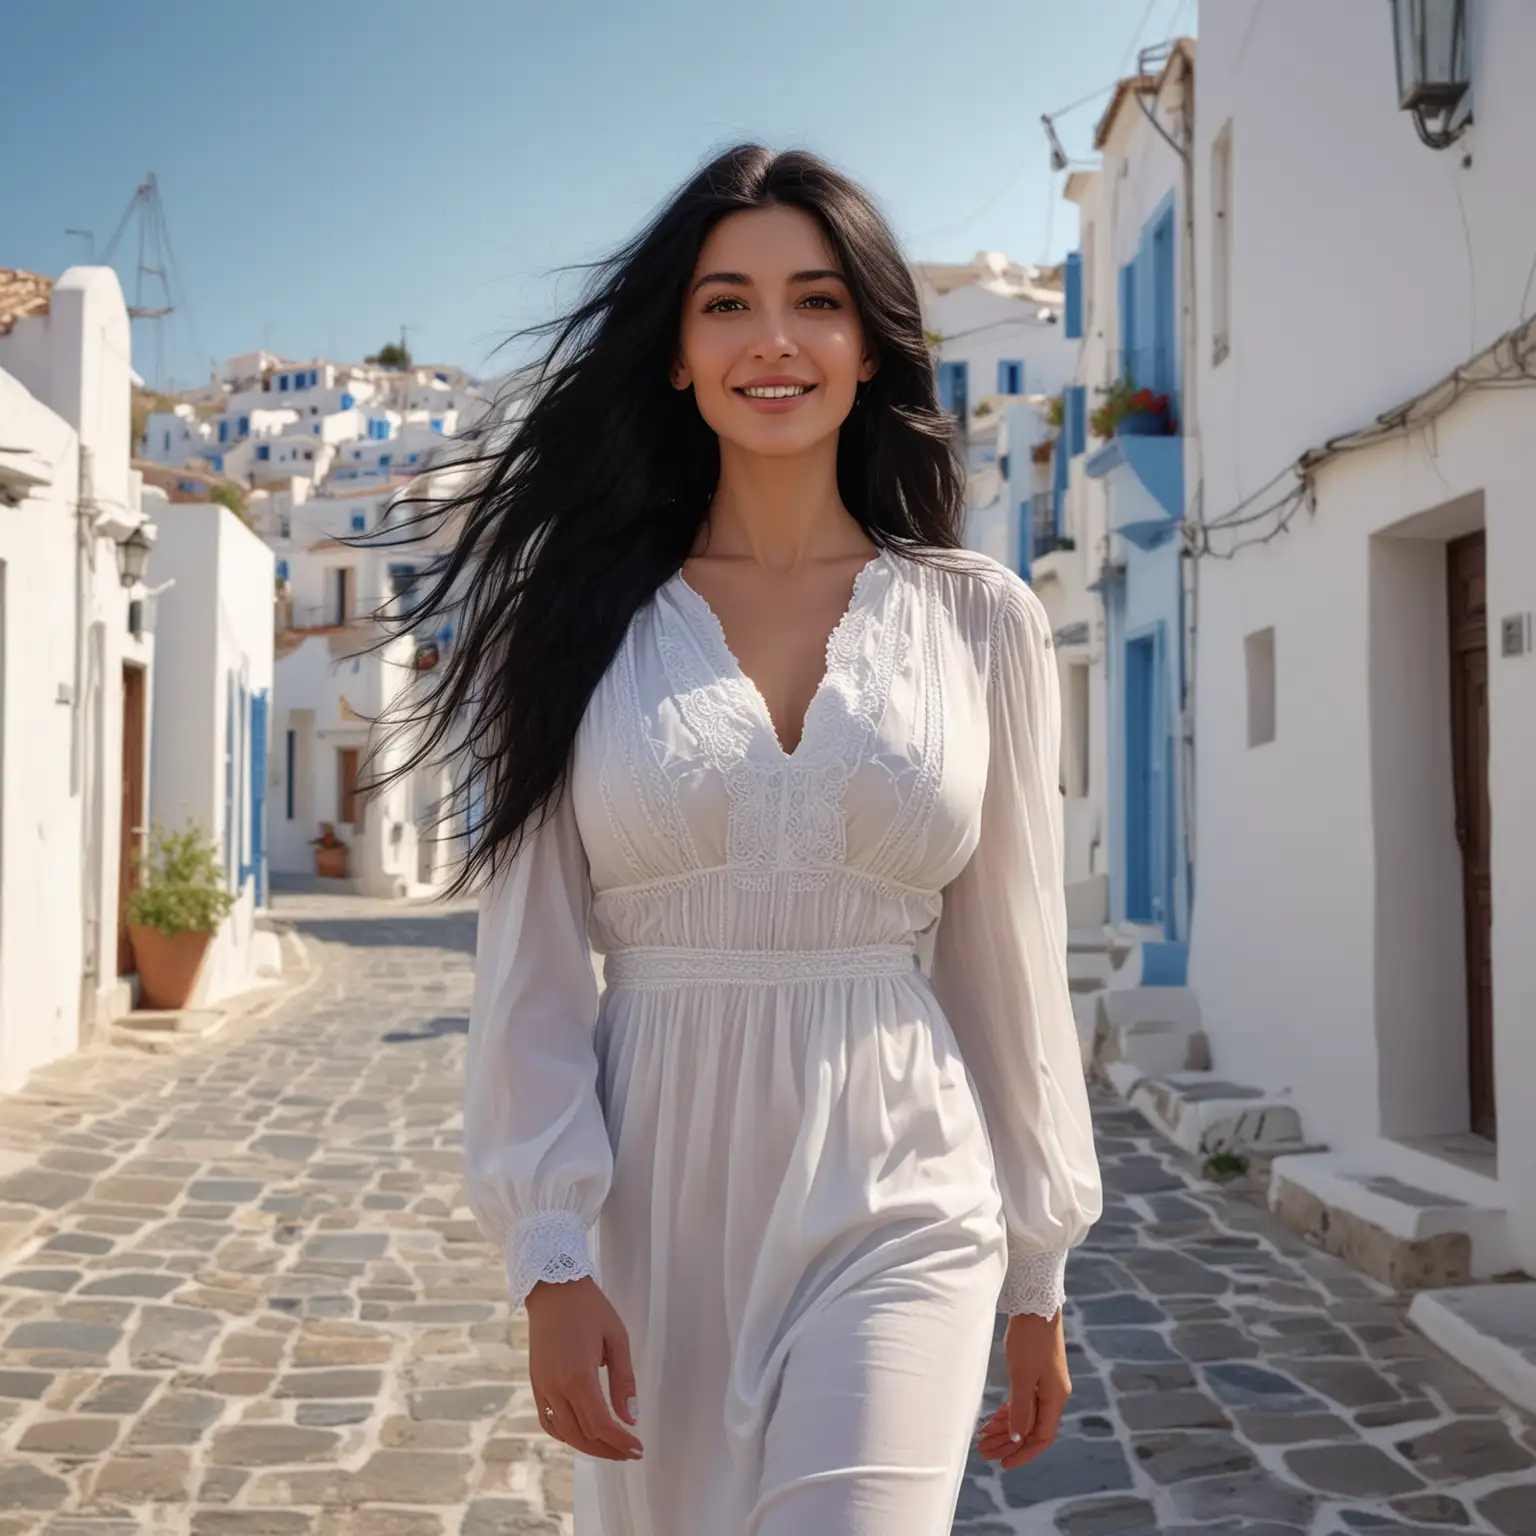 Stylish Woman Strolling Through Greece Elegant Fashion in Mediterranean Ambiance